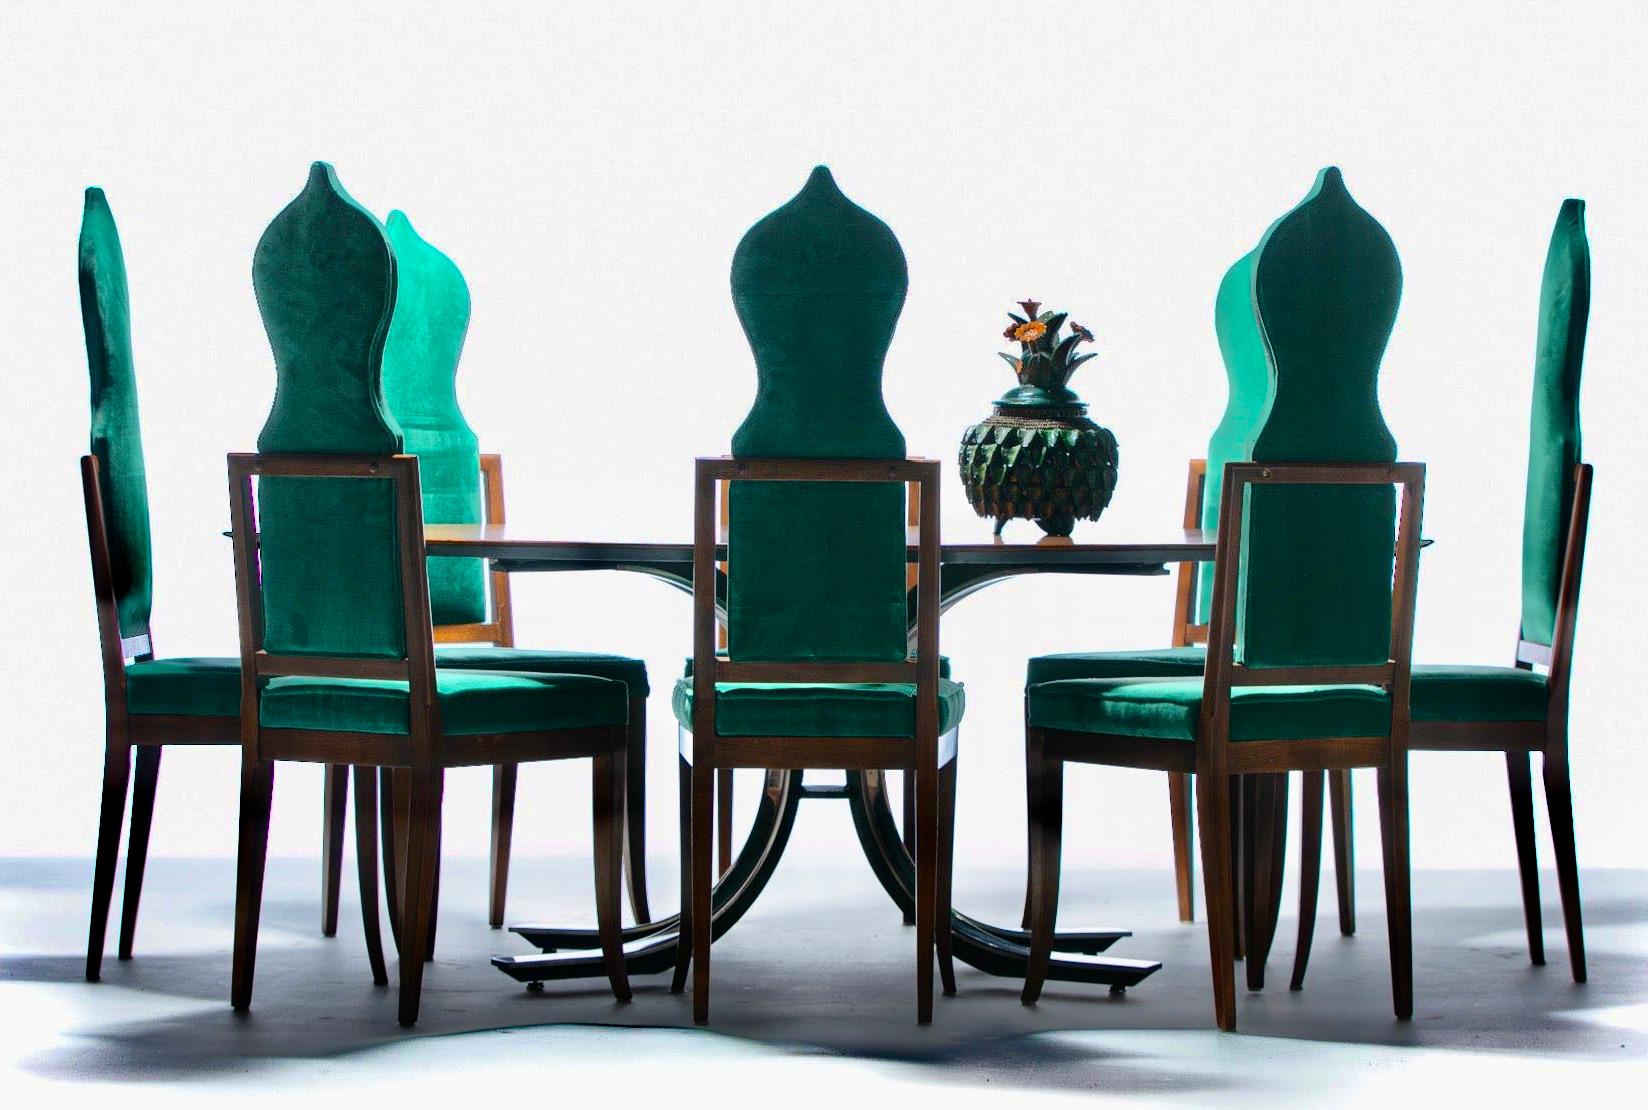 Kombinieren Sie hohe Kunst und einzigartige Skulpturen mit einem sexy Tom Ford Dinner Party Vibe und Sie erhalten dieses umwerfend schöne Set von 14 Tommi Parzinger Stil Hollywood Regency Walnuss Esszimmerstühlen gepolstert in weichen Smaragdgrünem